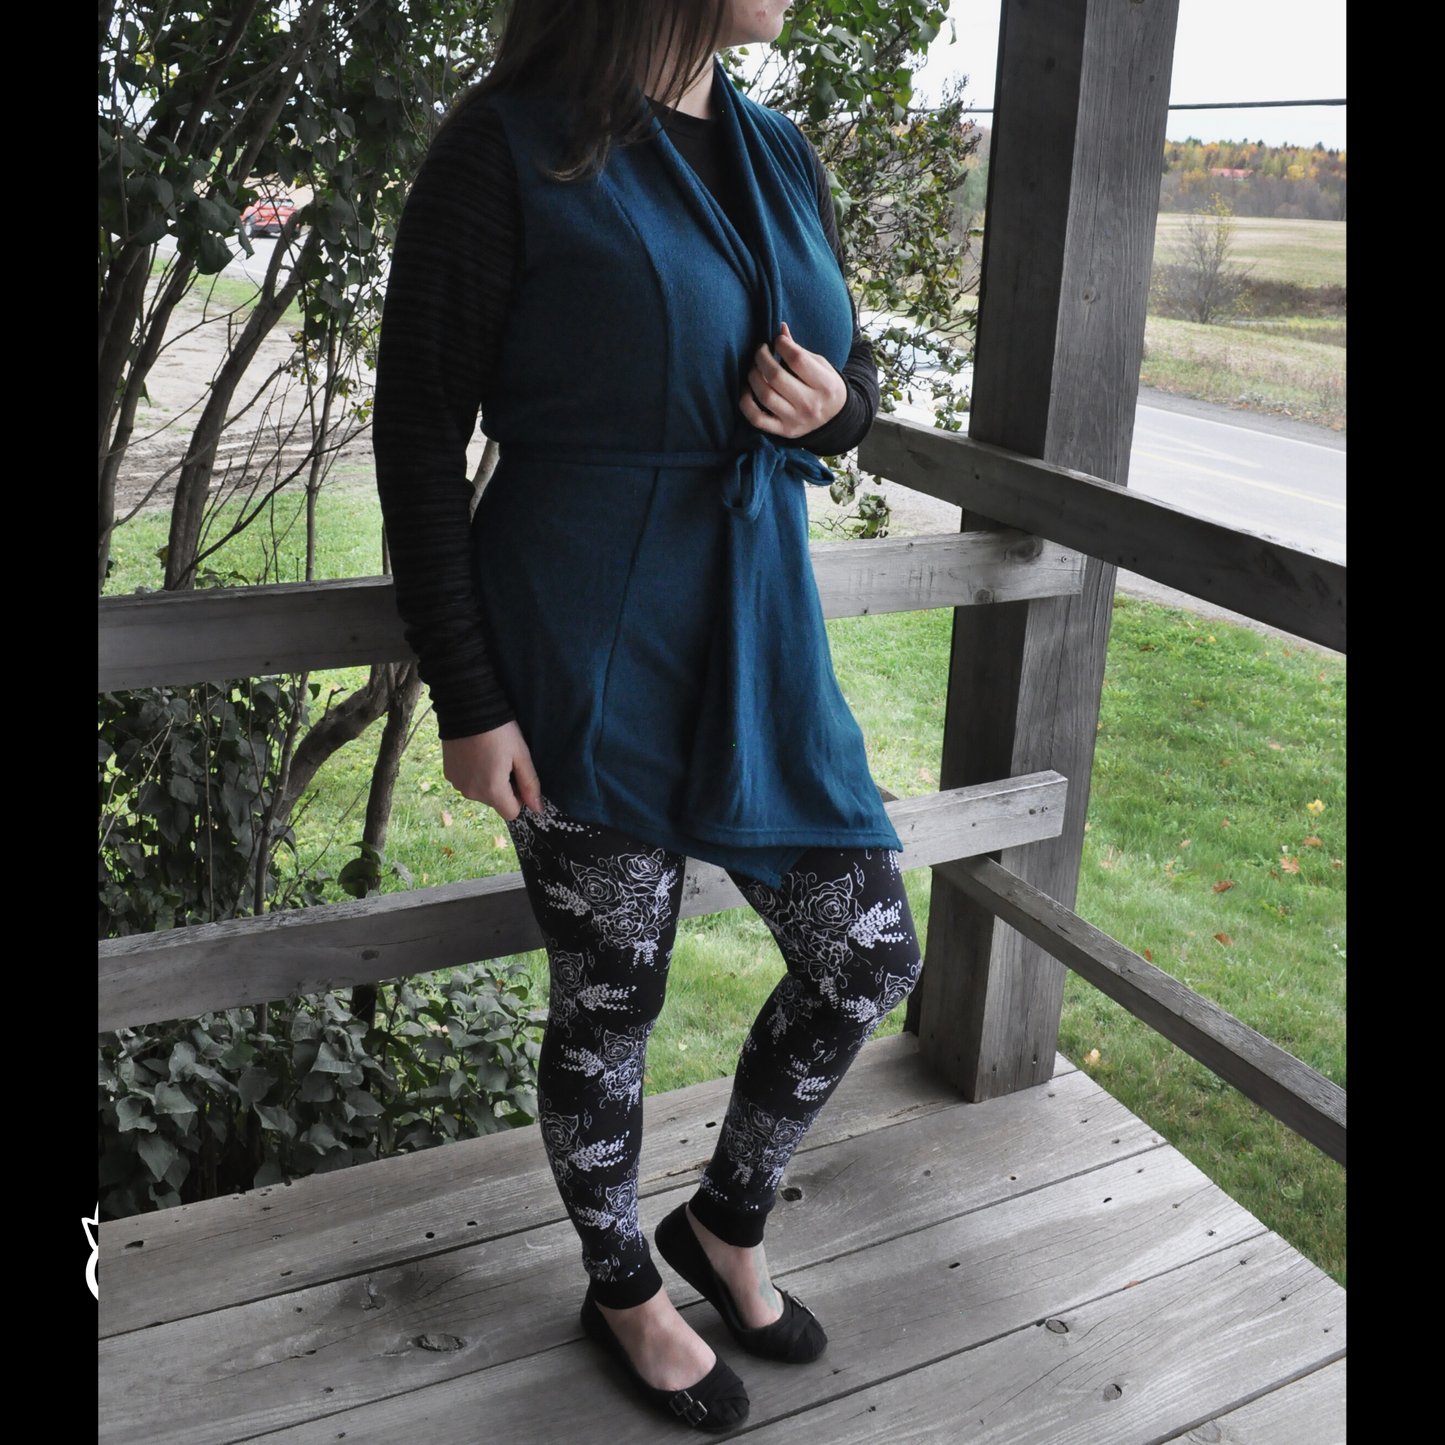 Cardigan femme au multilook -version turquoise foncé- lainage de tricot en polyester-Medium/ Large